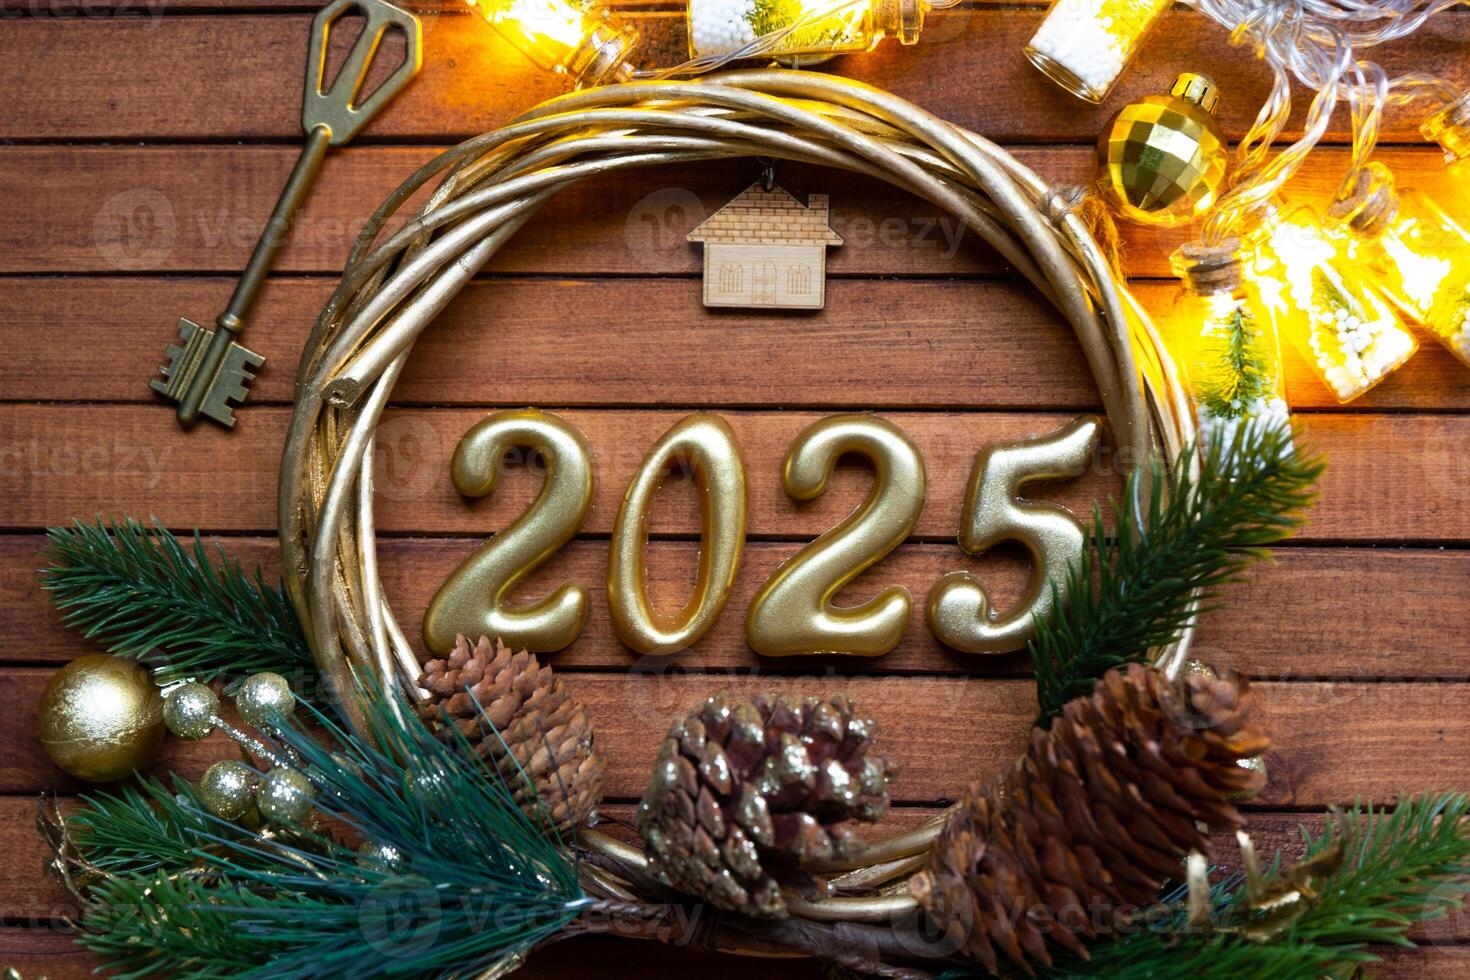 Nouveau année maison clé avec porte-clés chalet sur de fête marron en bois Contexte avec nombre 2025 dans couronne, lumières de guirlandes. achat, construction, déménagement, hypothèque, Assurance photo